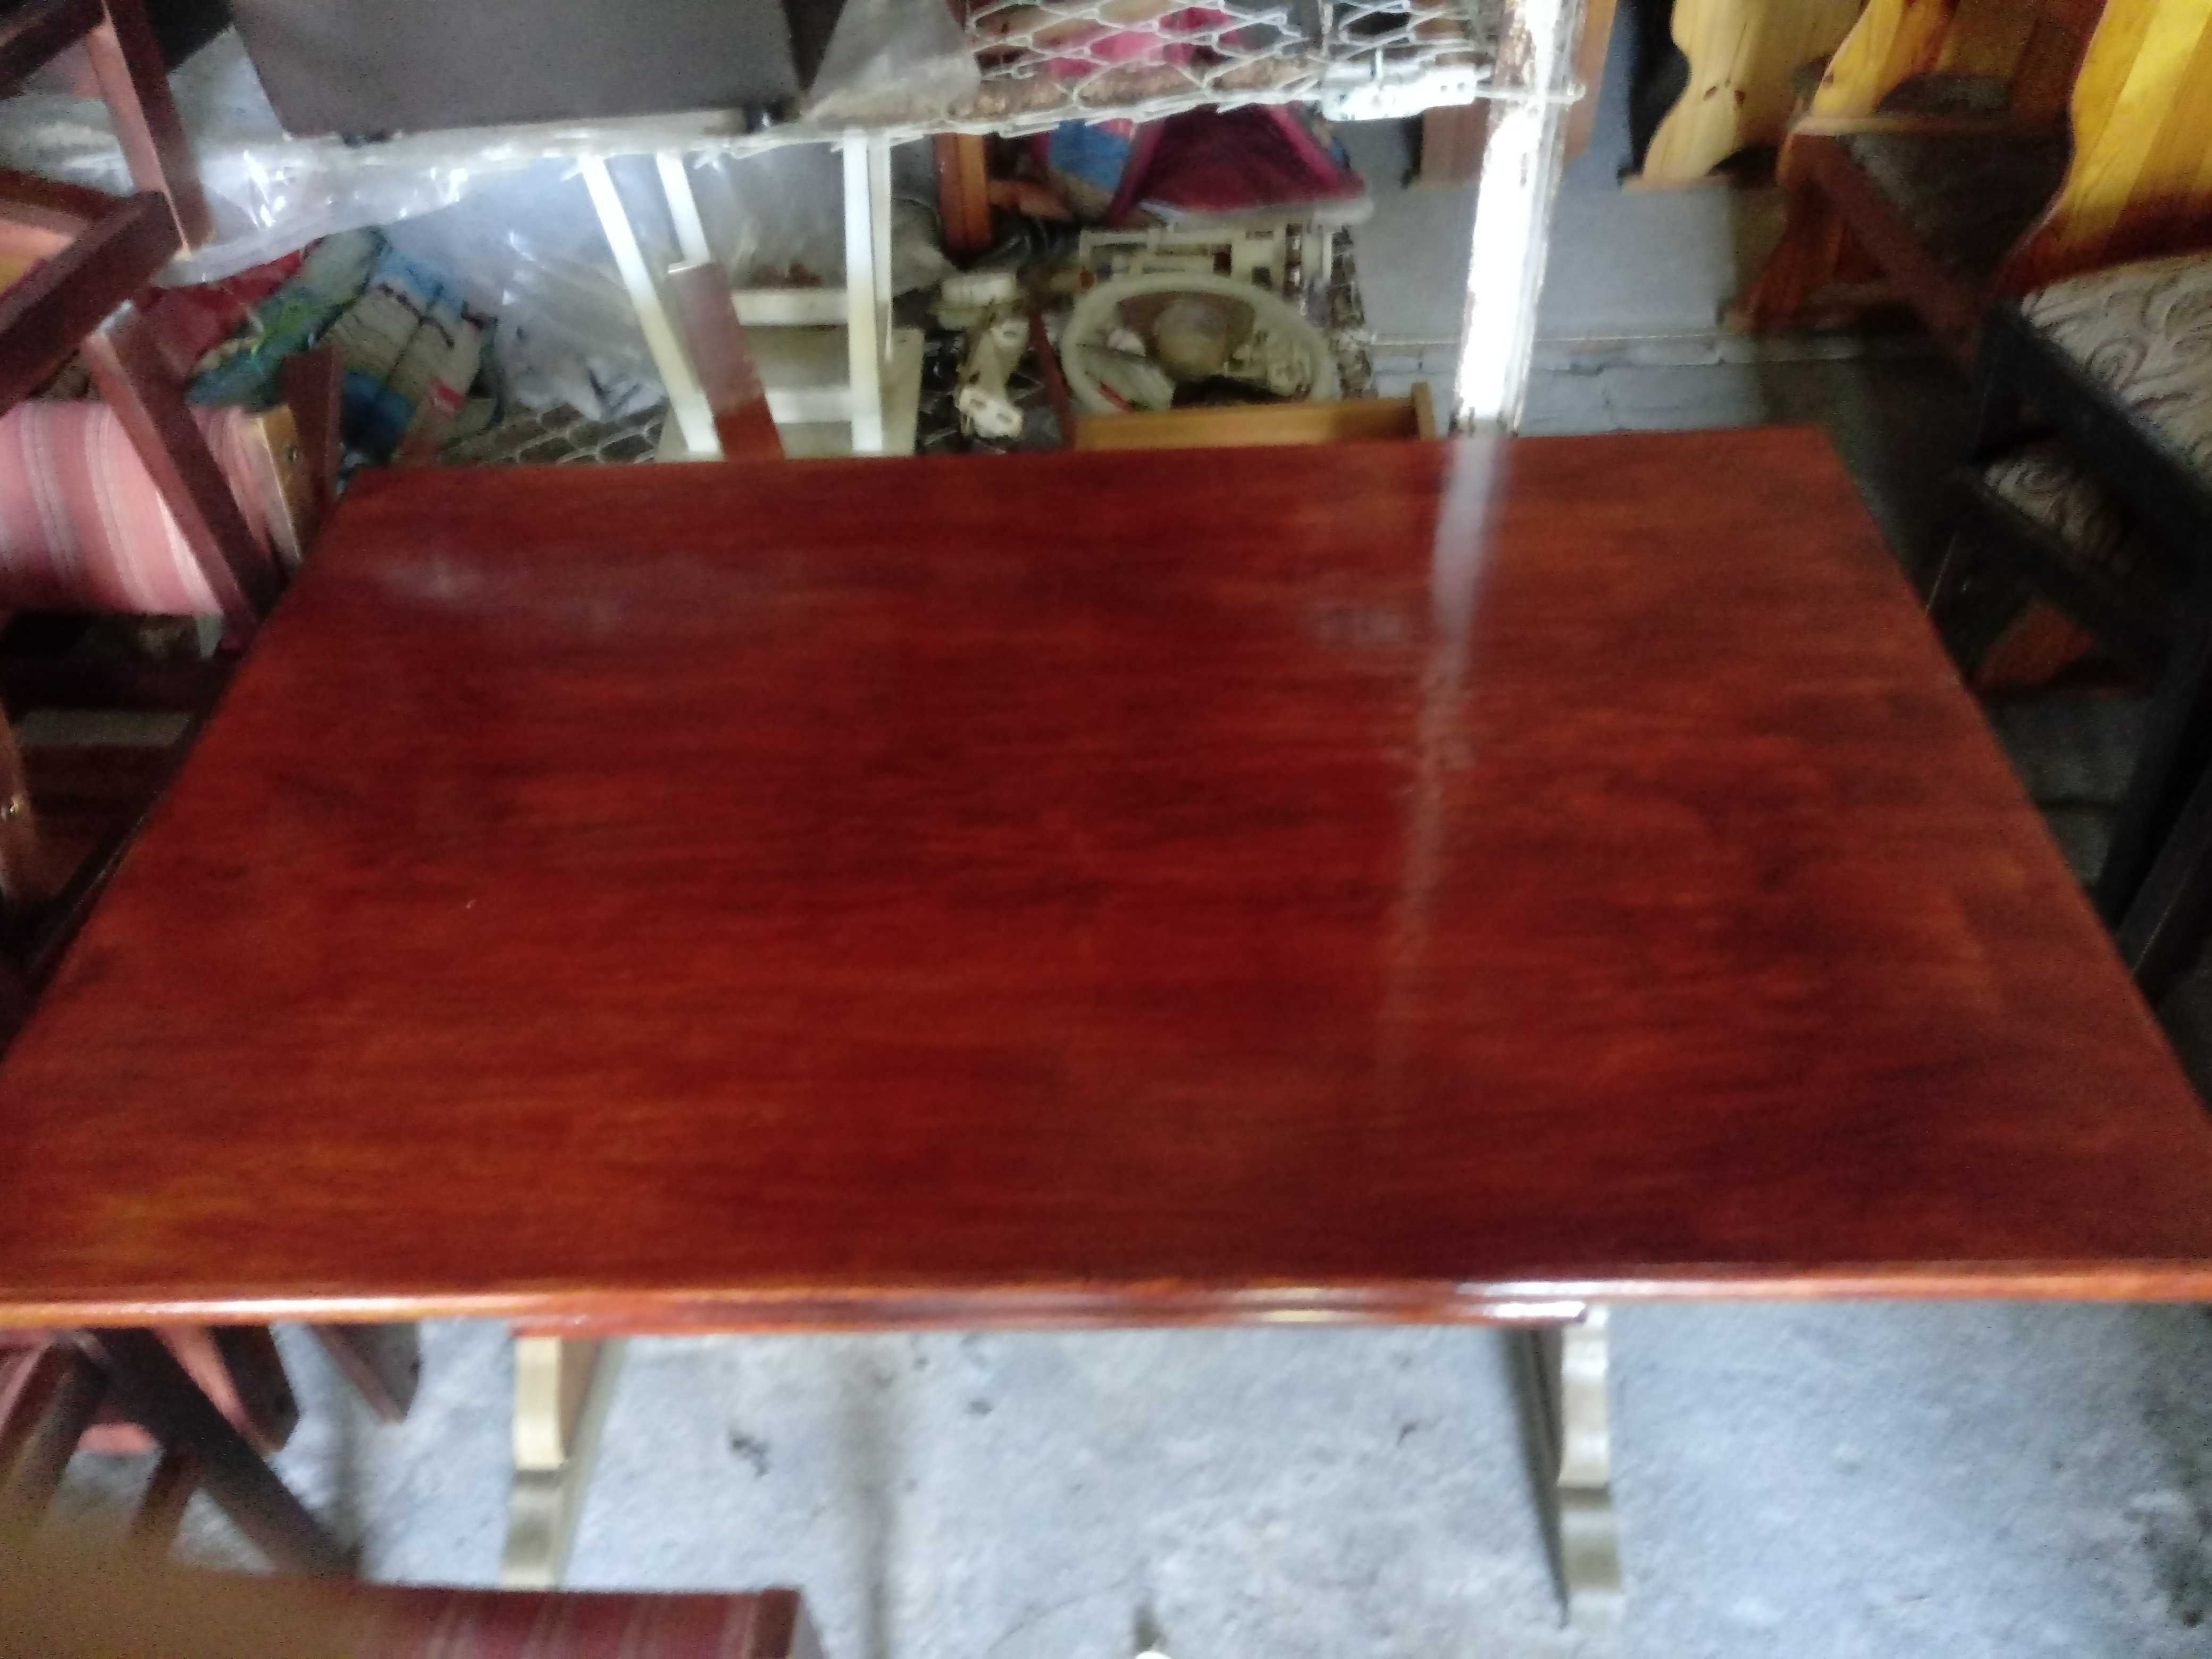 stolik drewniany-dębowy 120x60cm